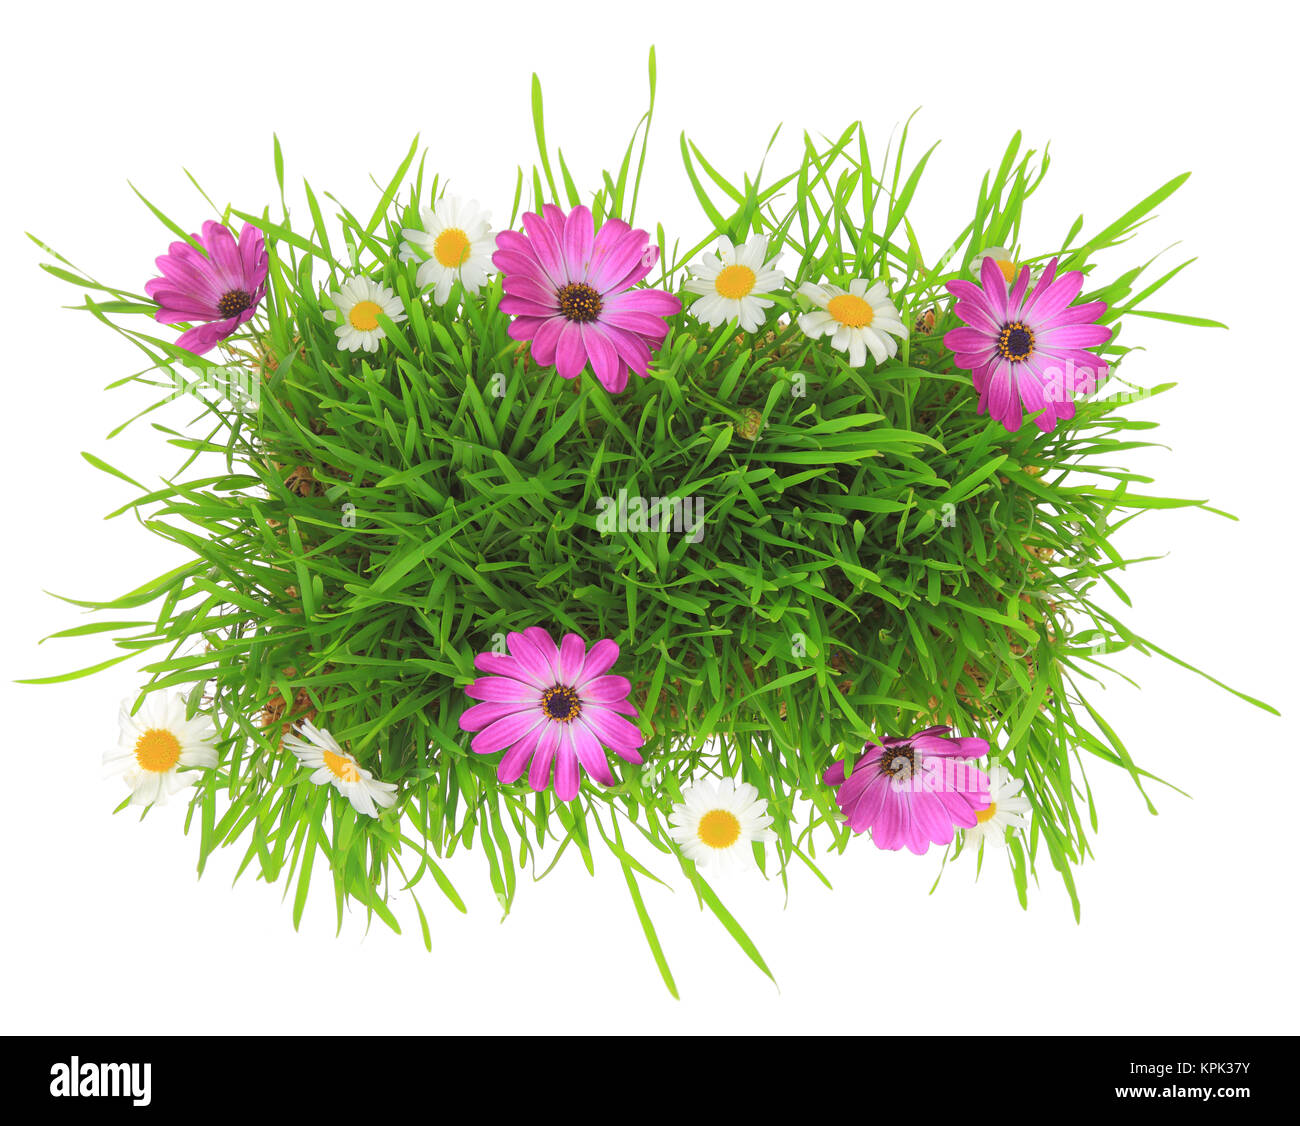 L'herbe verte avec des fleurs roses et blanches isolées Banque D'Images